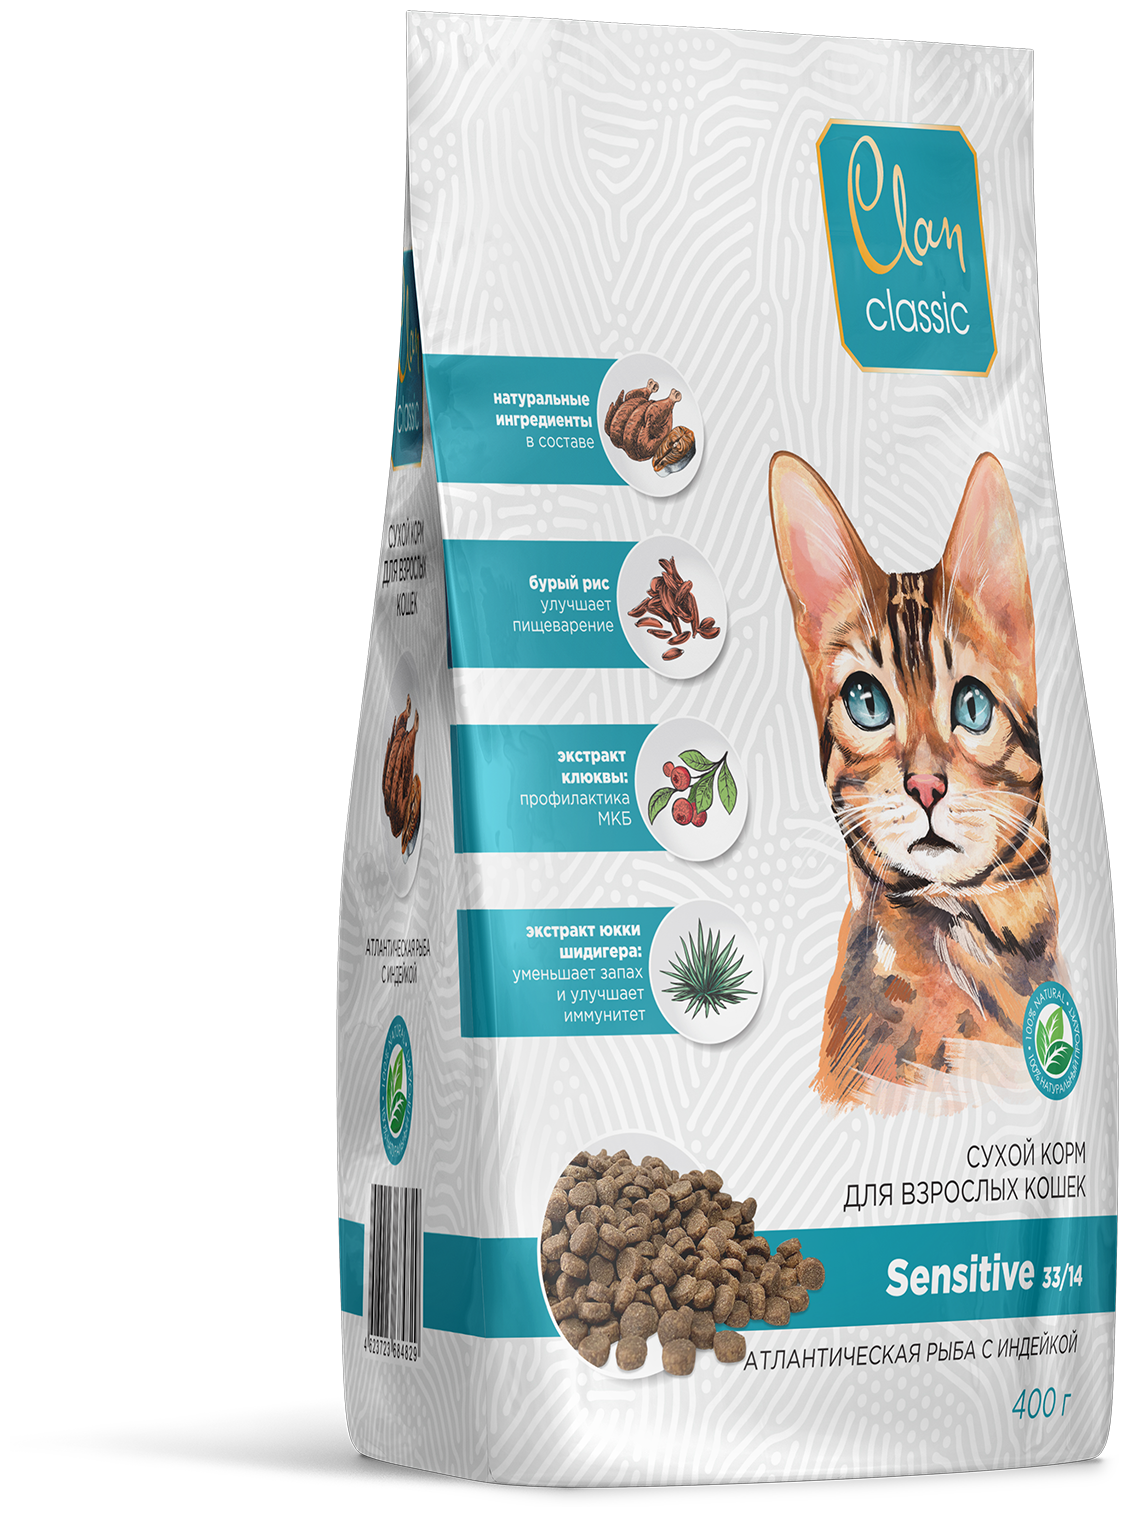 Clan Classic Sensitive. Сухой корм для кошек-с чувствительным пищеварением С атлантической рыбой И индейкой 400 гр.